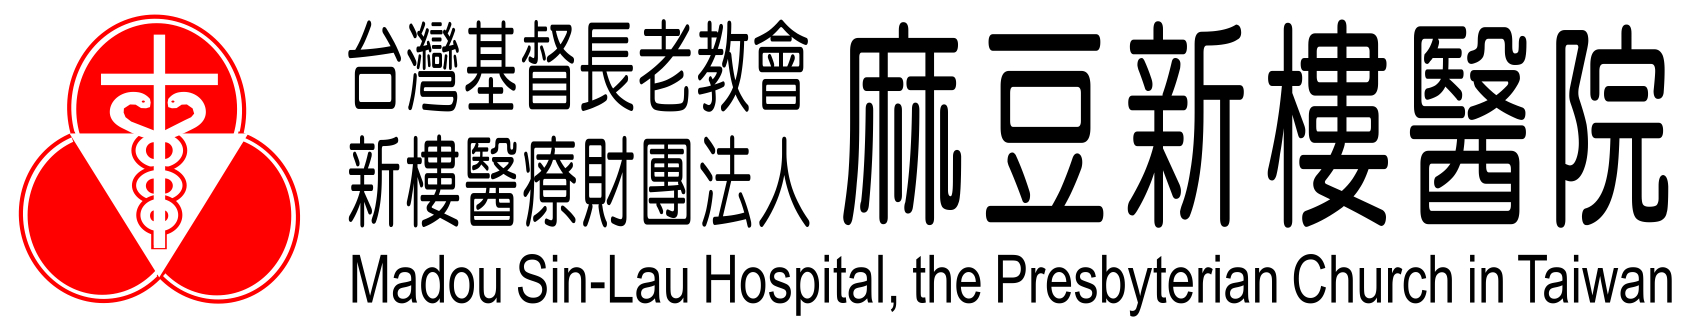 台灣基督長老教會新樓醫療財團法人麻豆新樓醫院